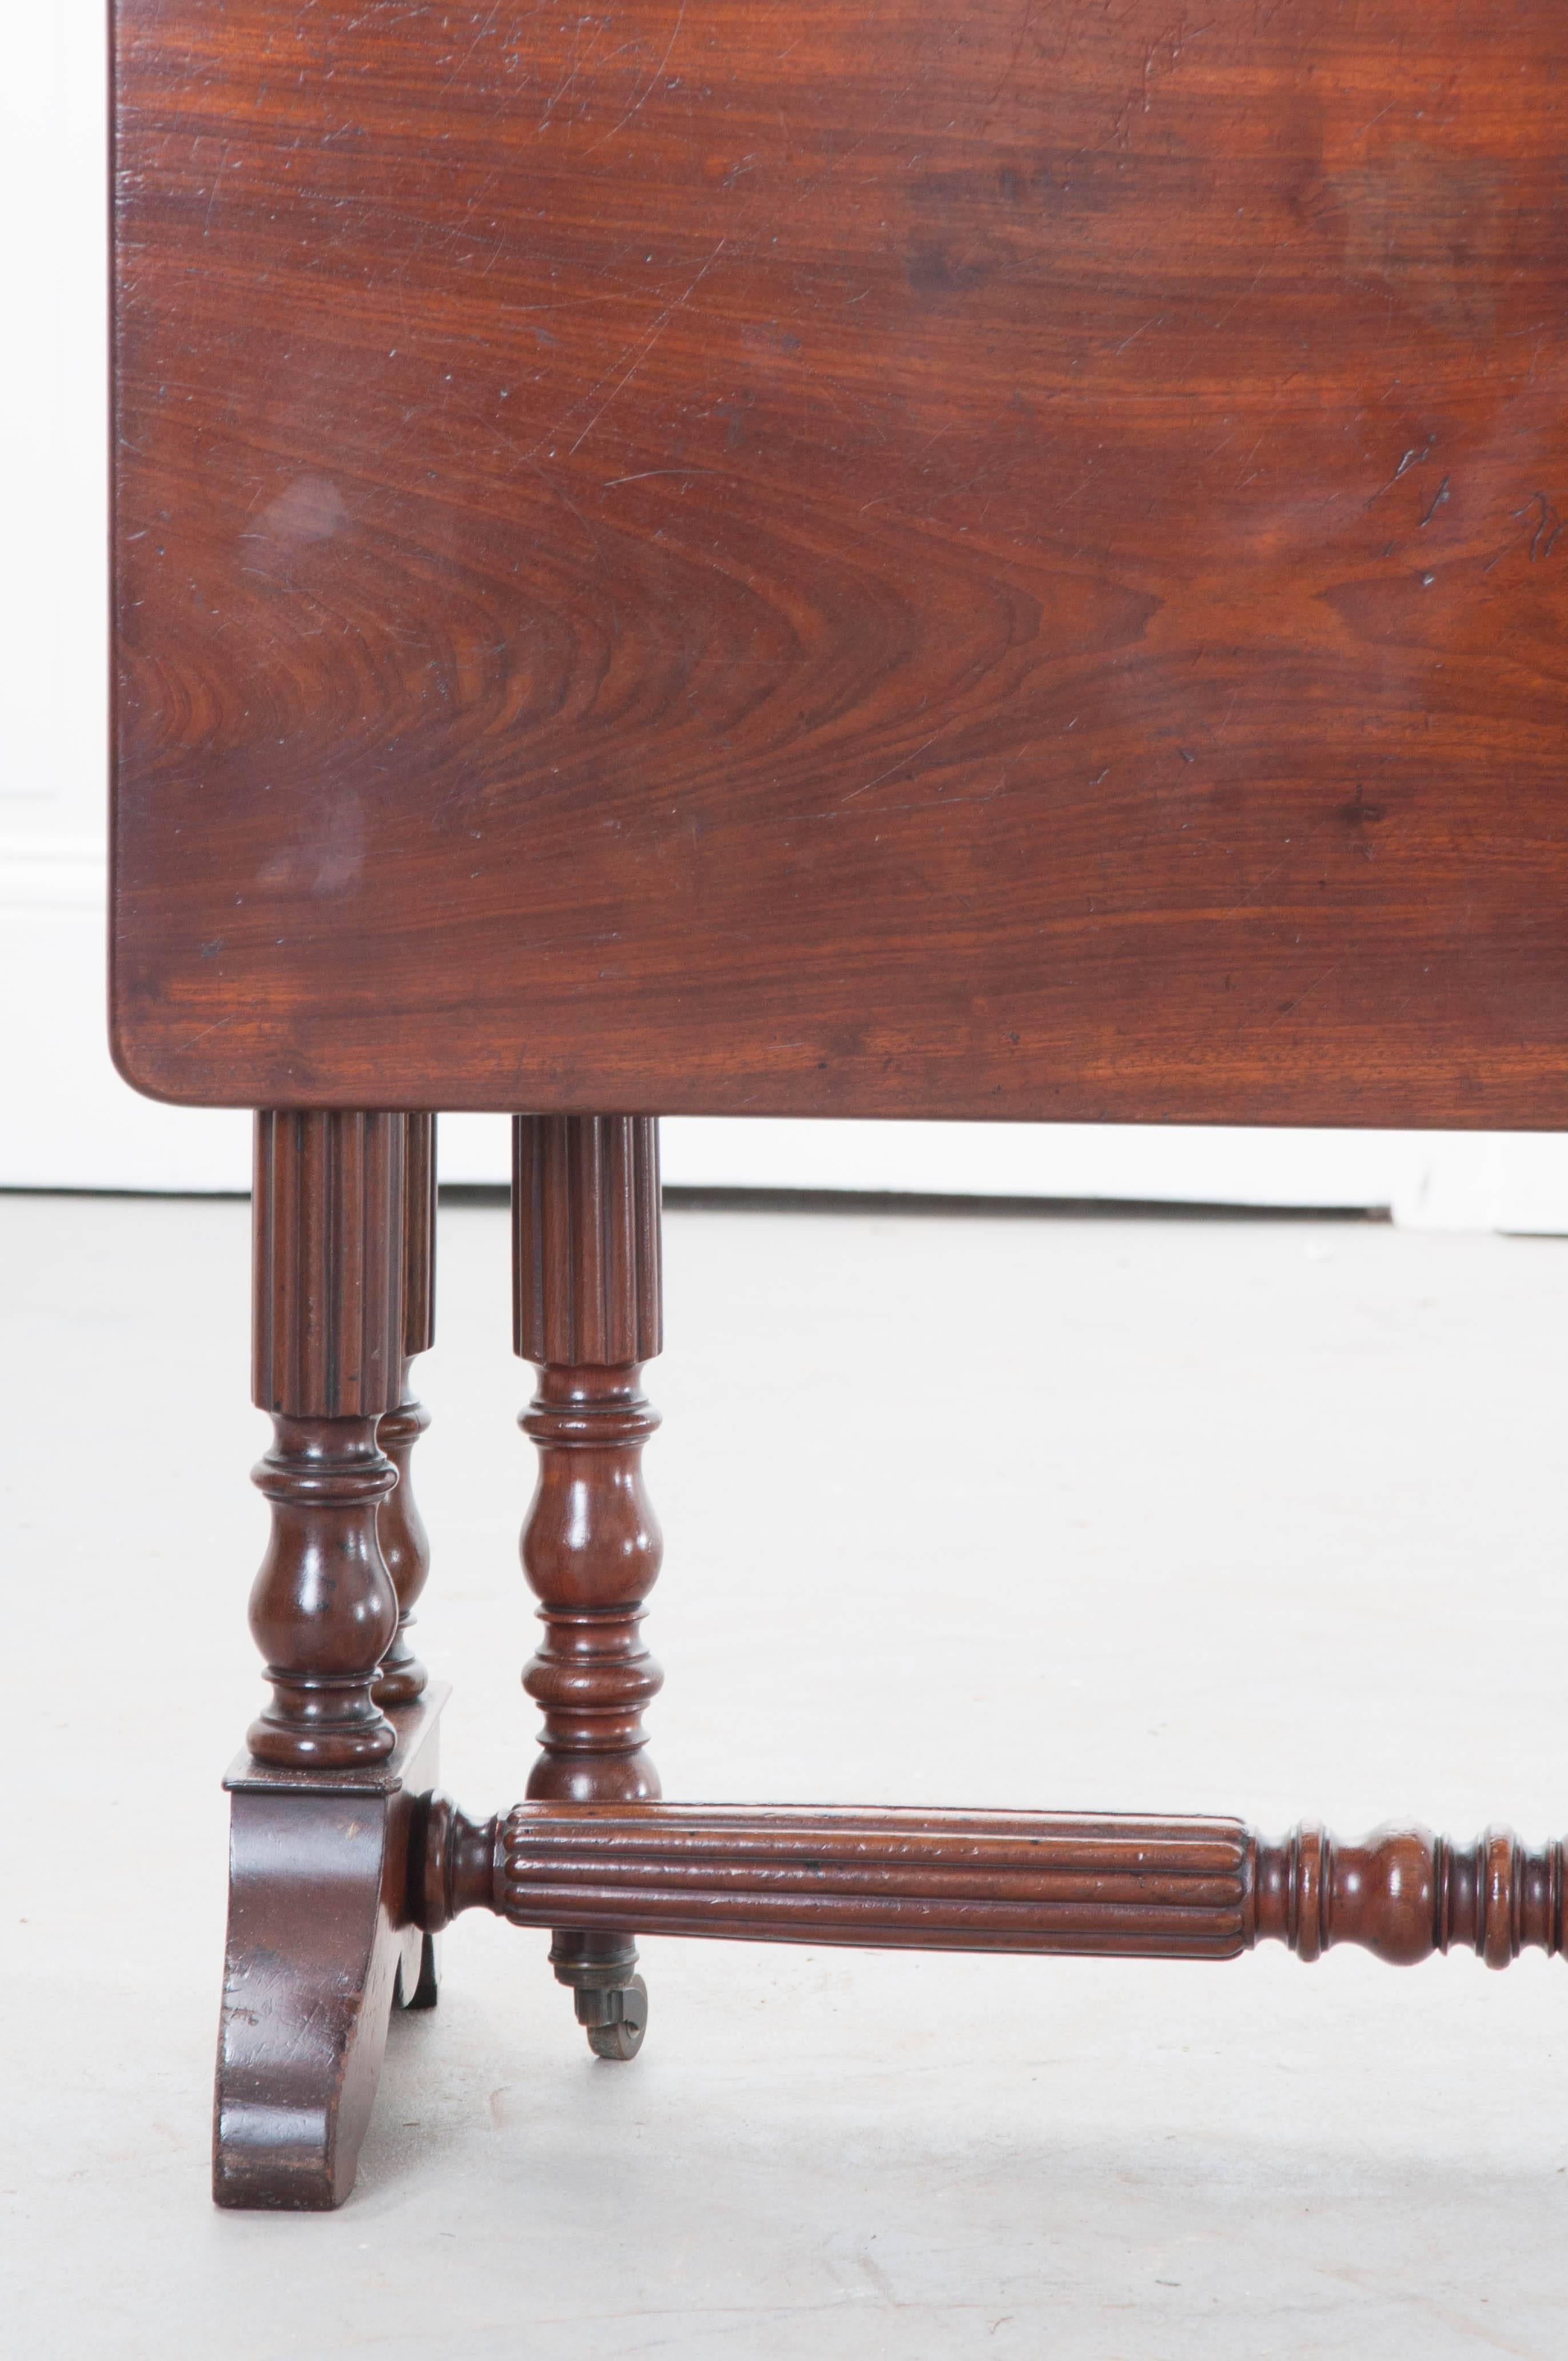 Für diesen hübschen Regency-Tisch aus dem 19. Jahrhundert in England wurde edles Mahagoni gewählt. Der Tisch hat wunderschön gestaltete Beine, die gedreht und mit einem Riffelmuster versehen sind. Die beiden schwenkbaren Beine, die beim Öffnen die